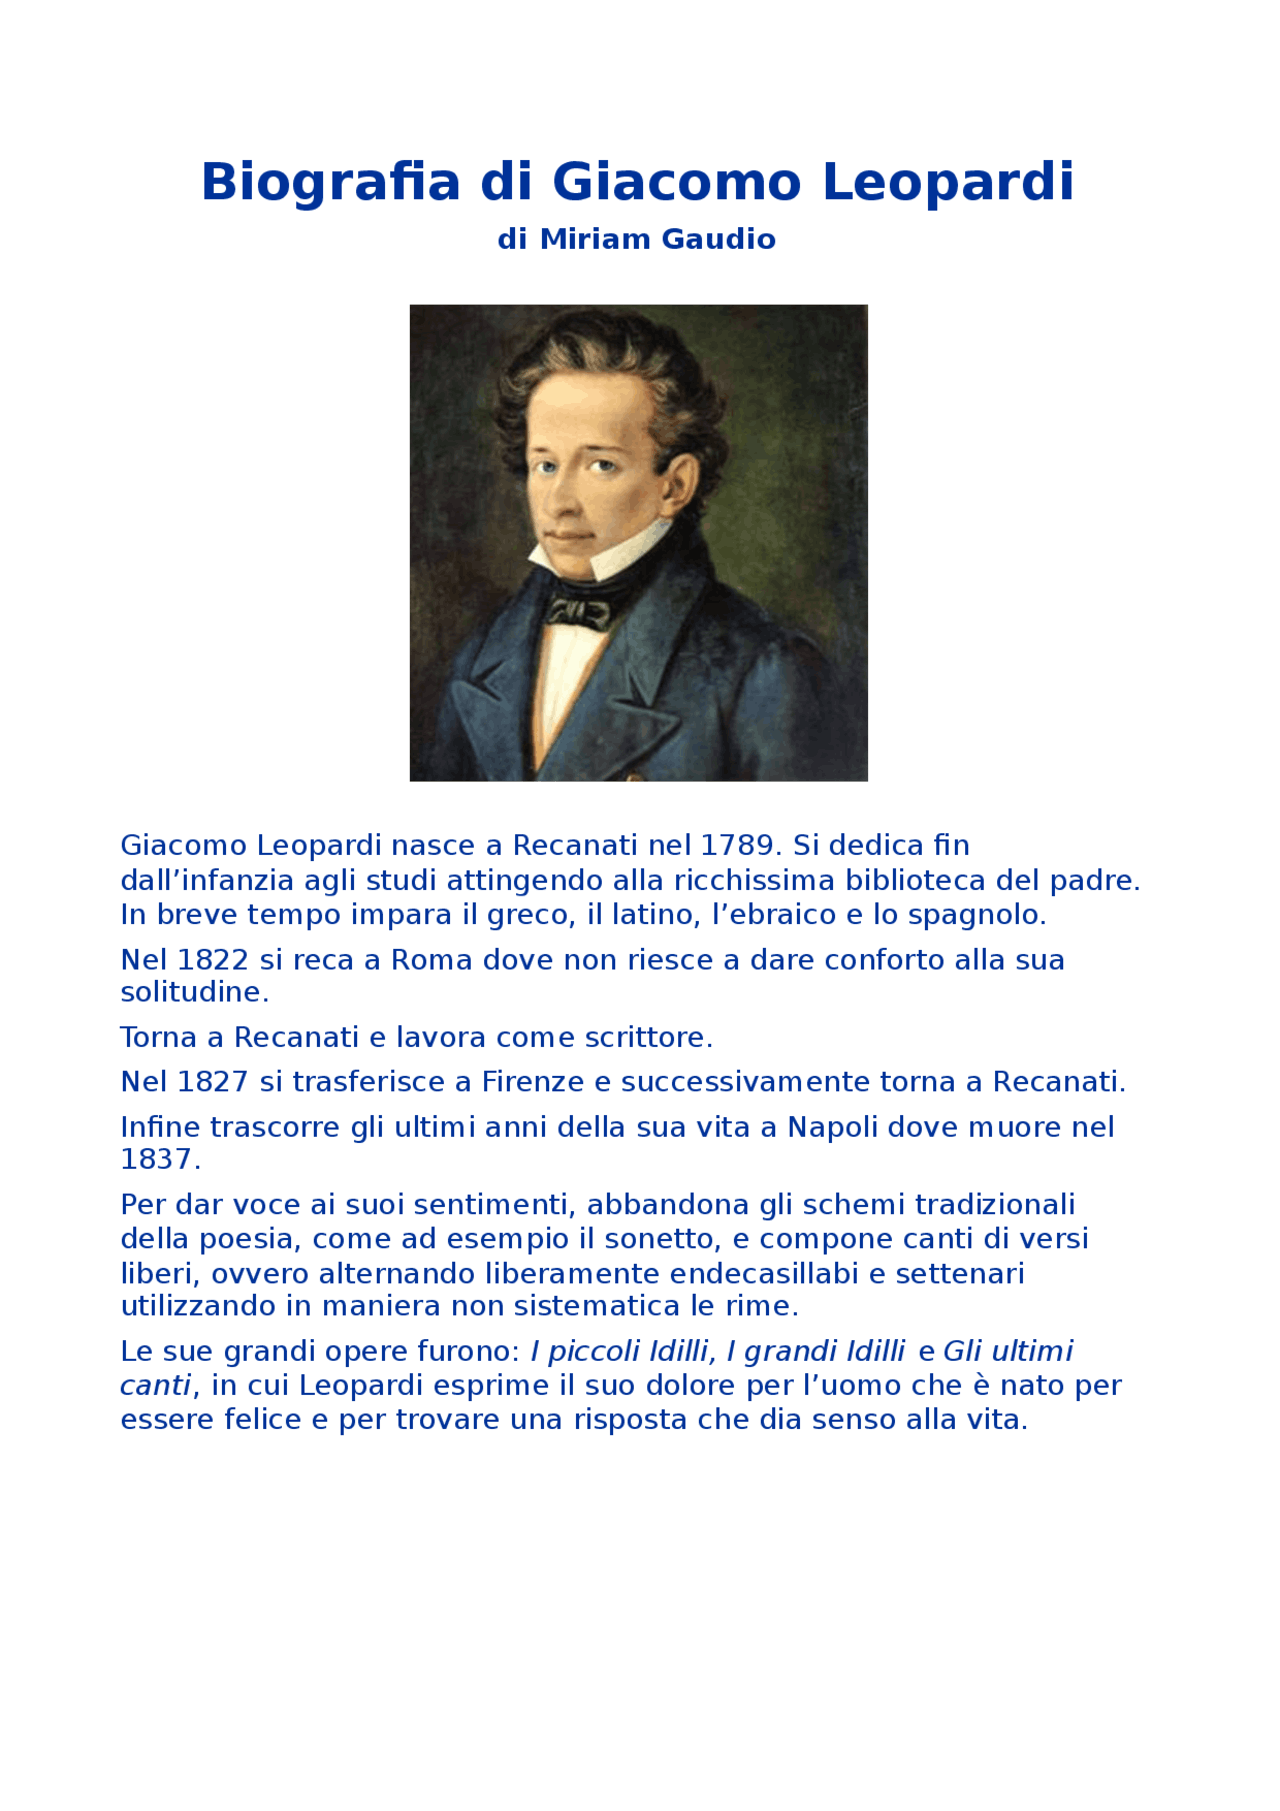  Biografía de Giacomo Leopardi